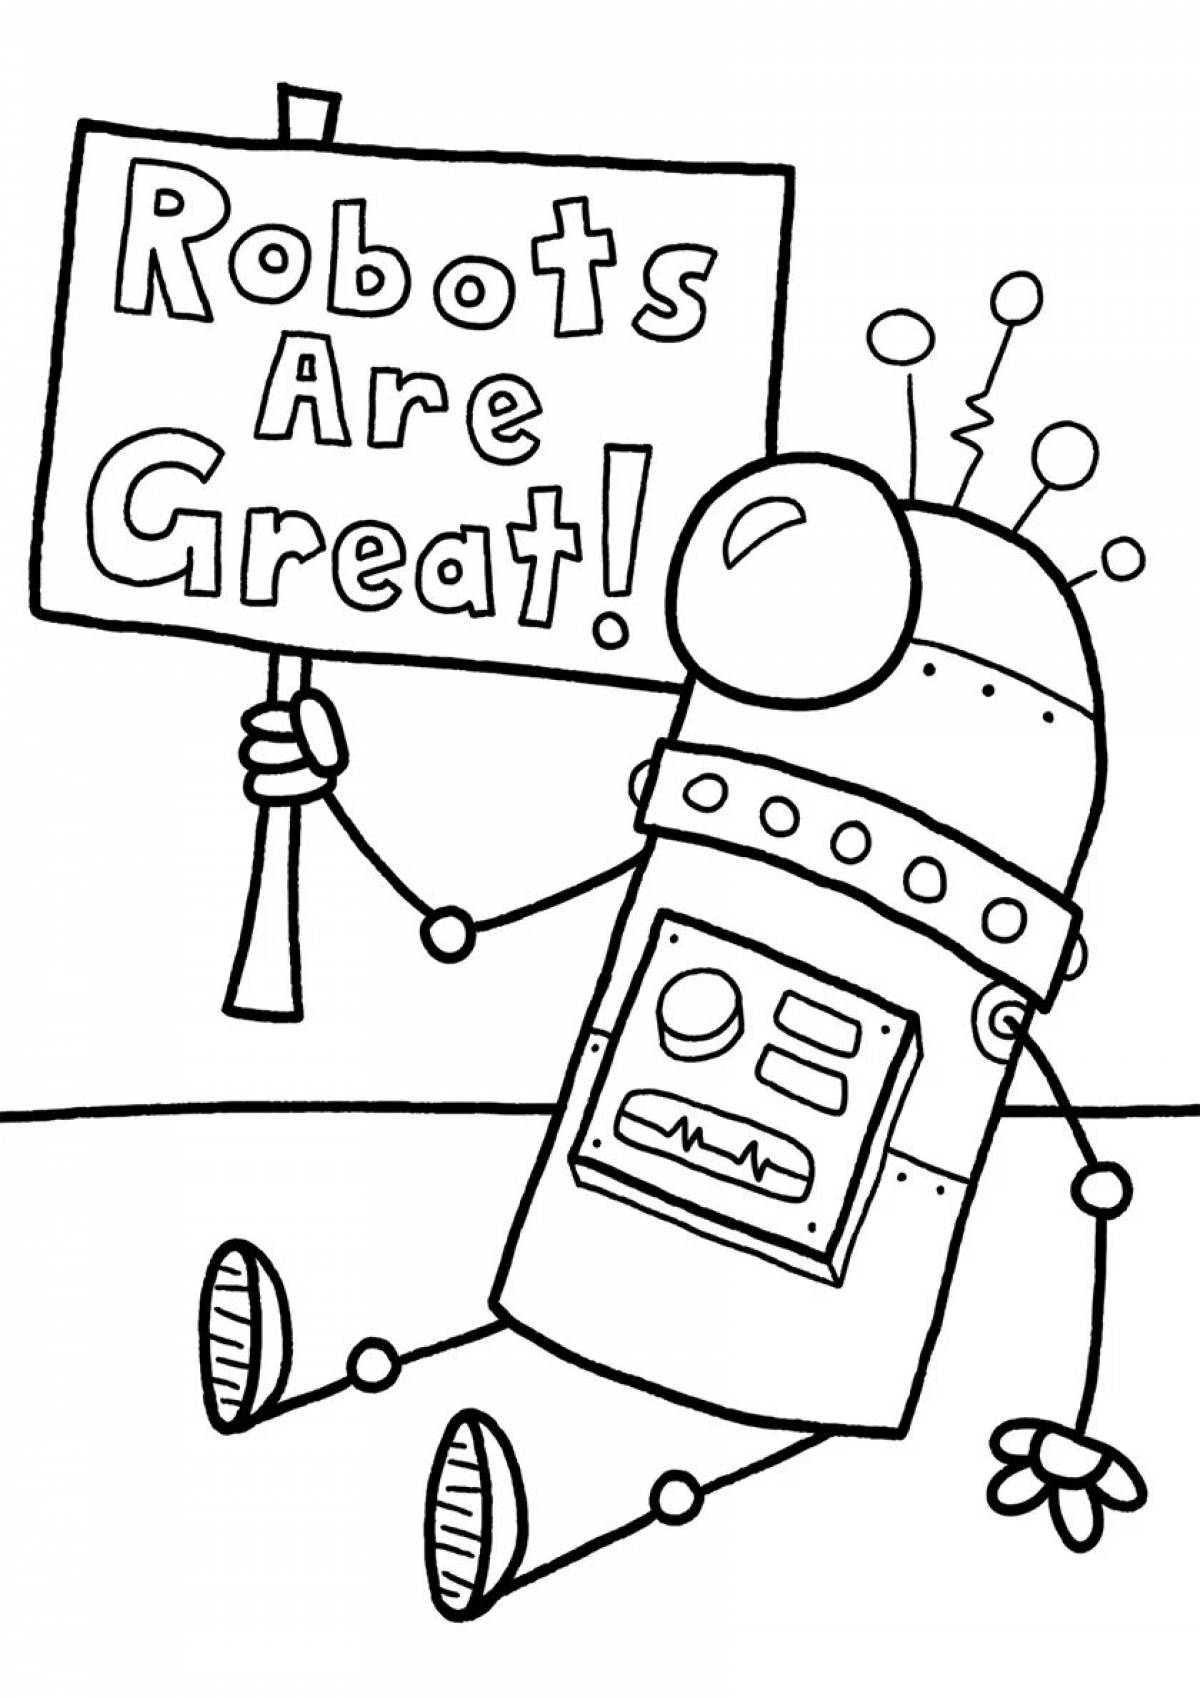 Coloring book brave robot teacher